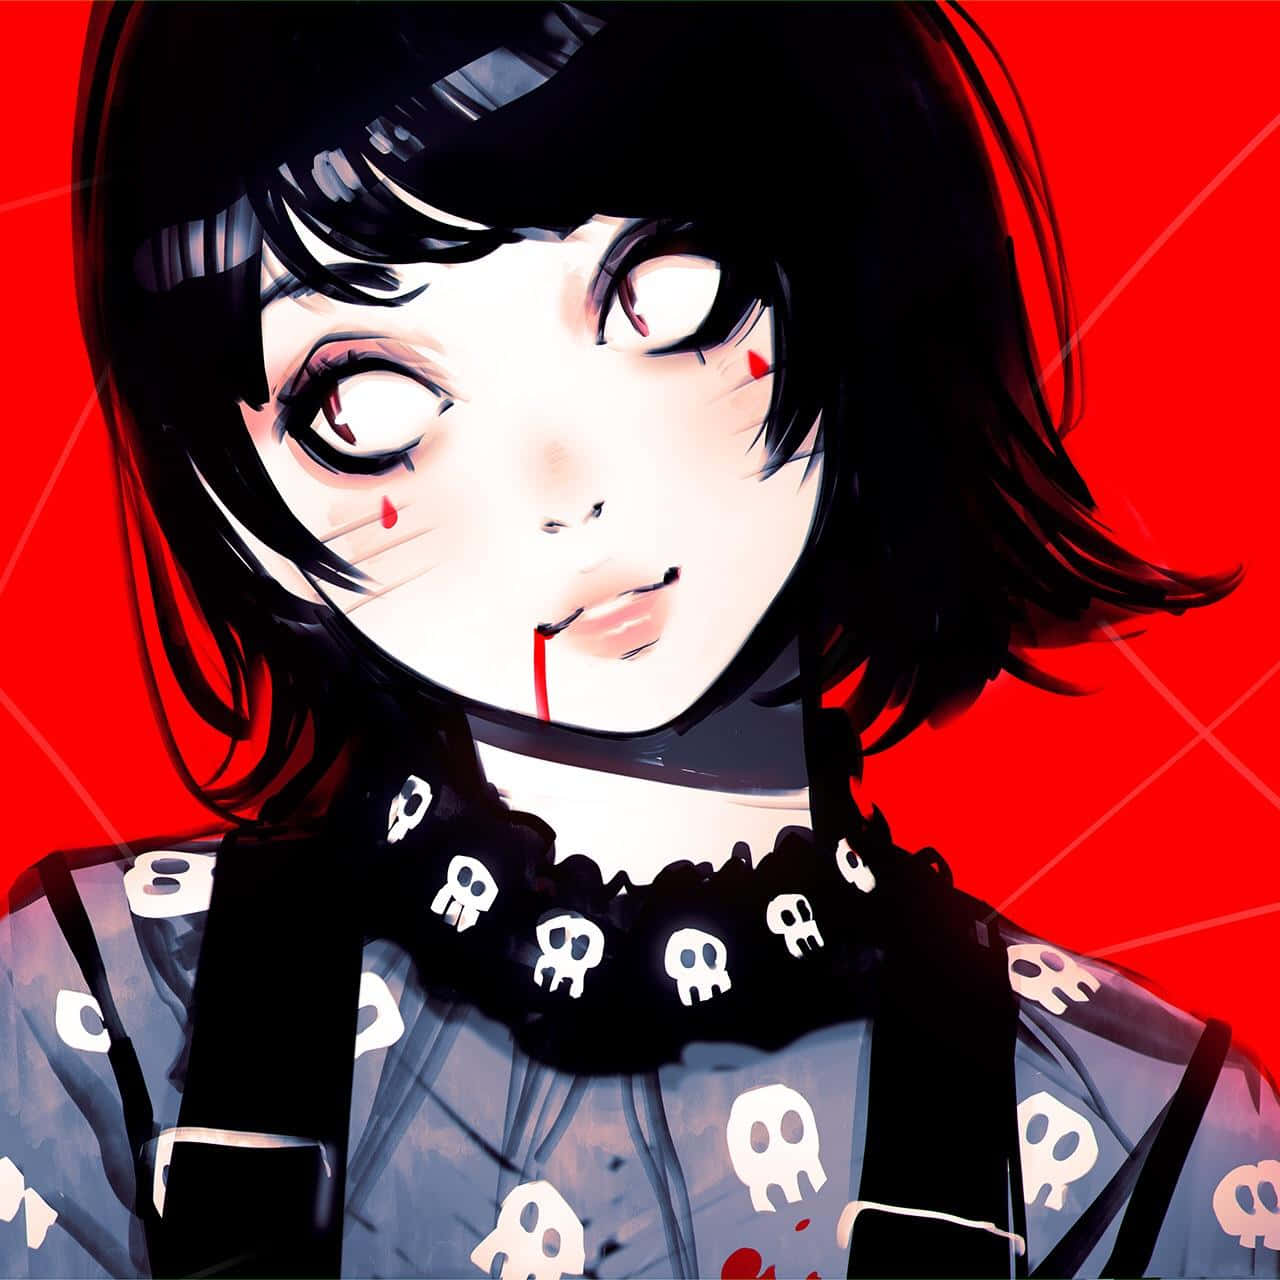 Vampire Girl Anime Aesthetic Wallpaper